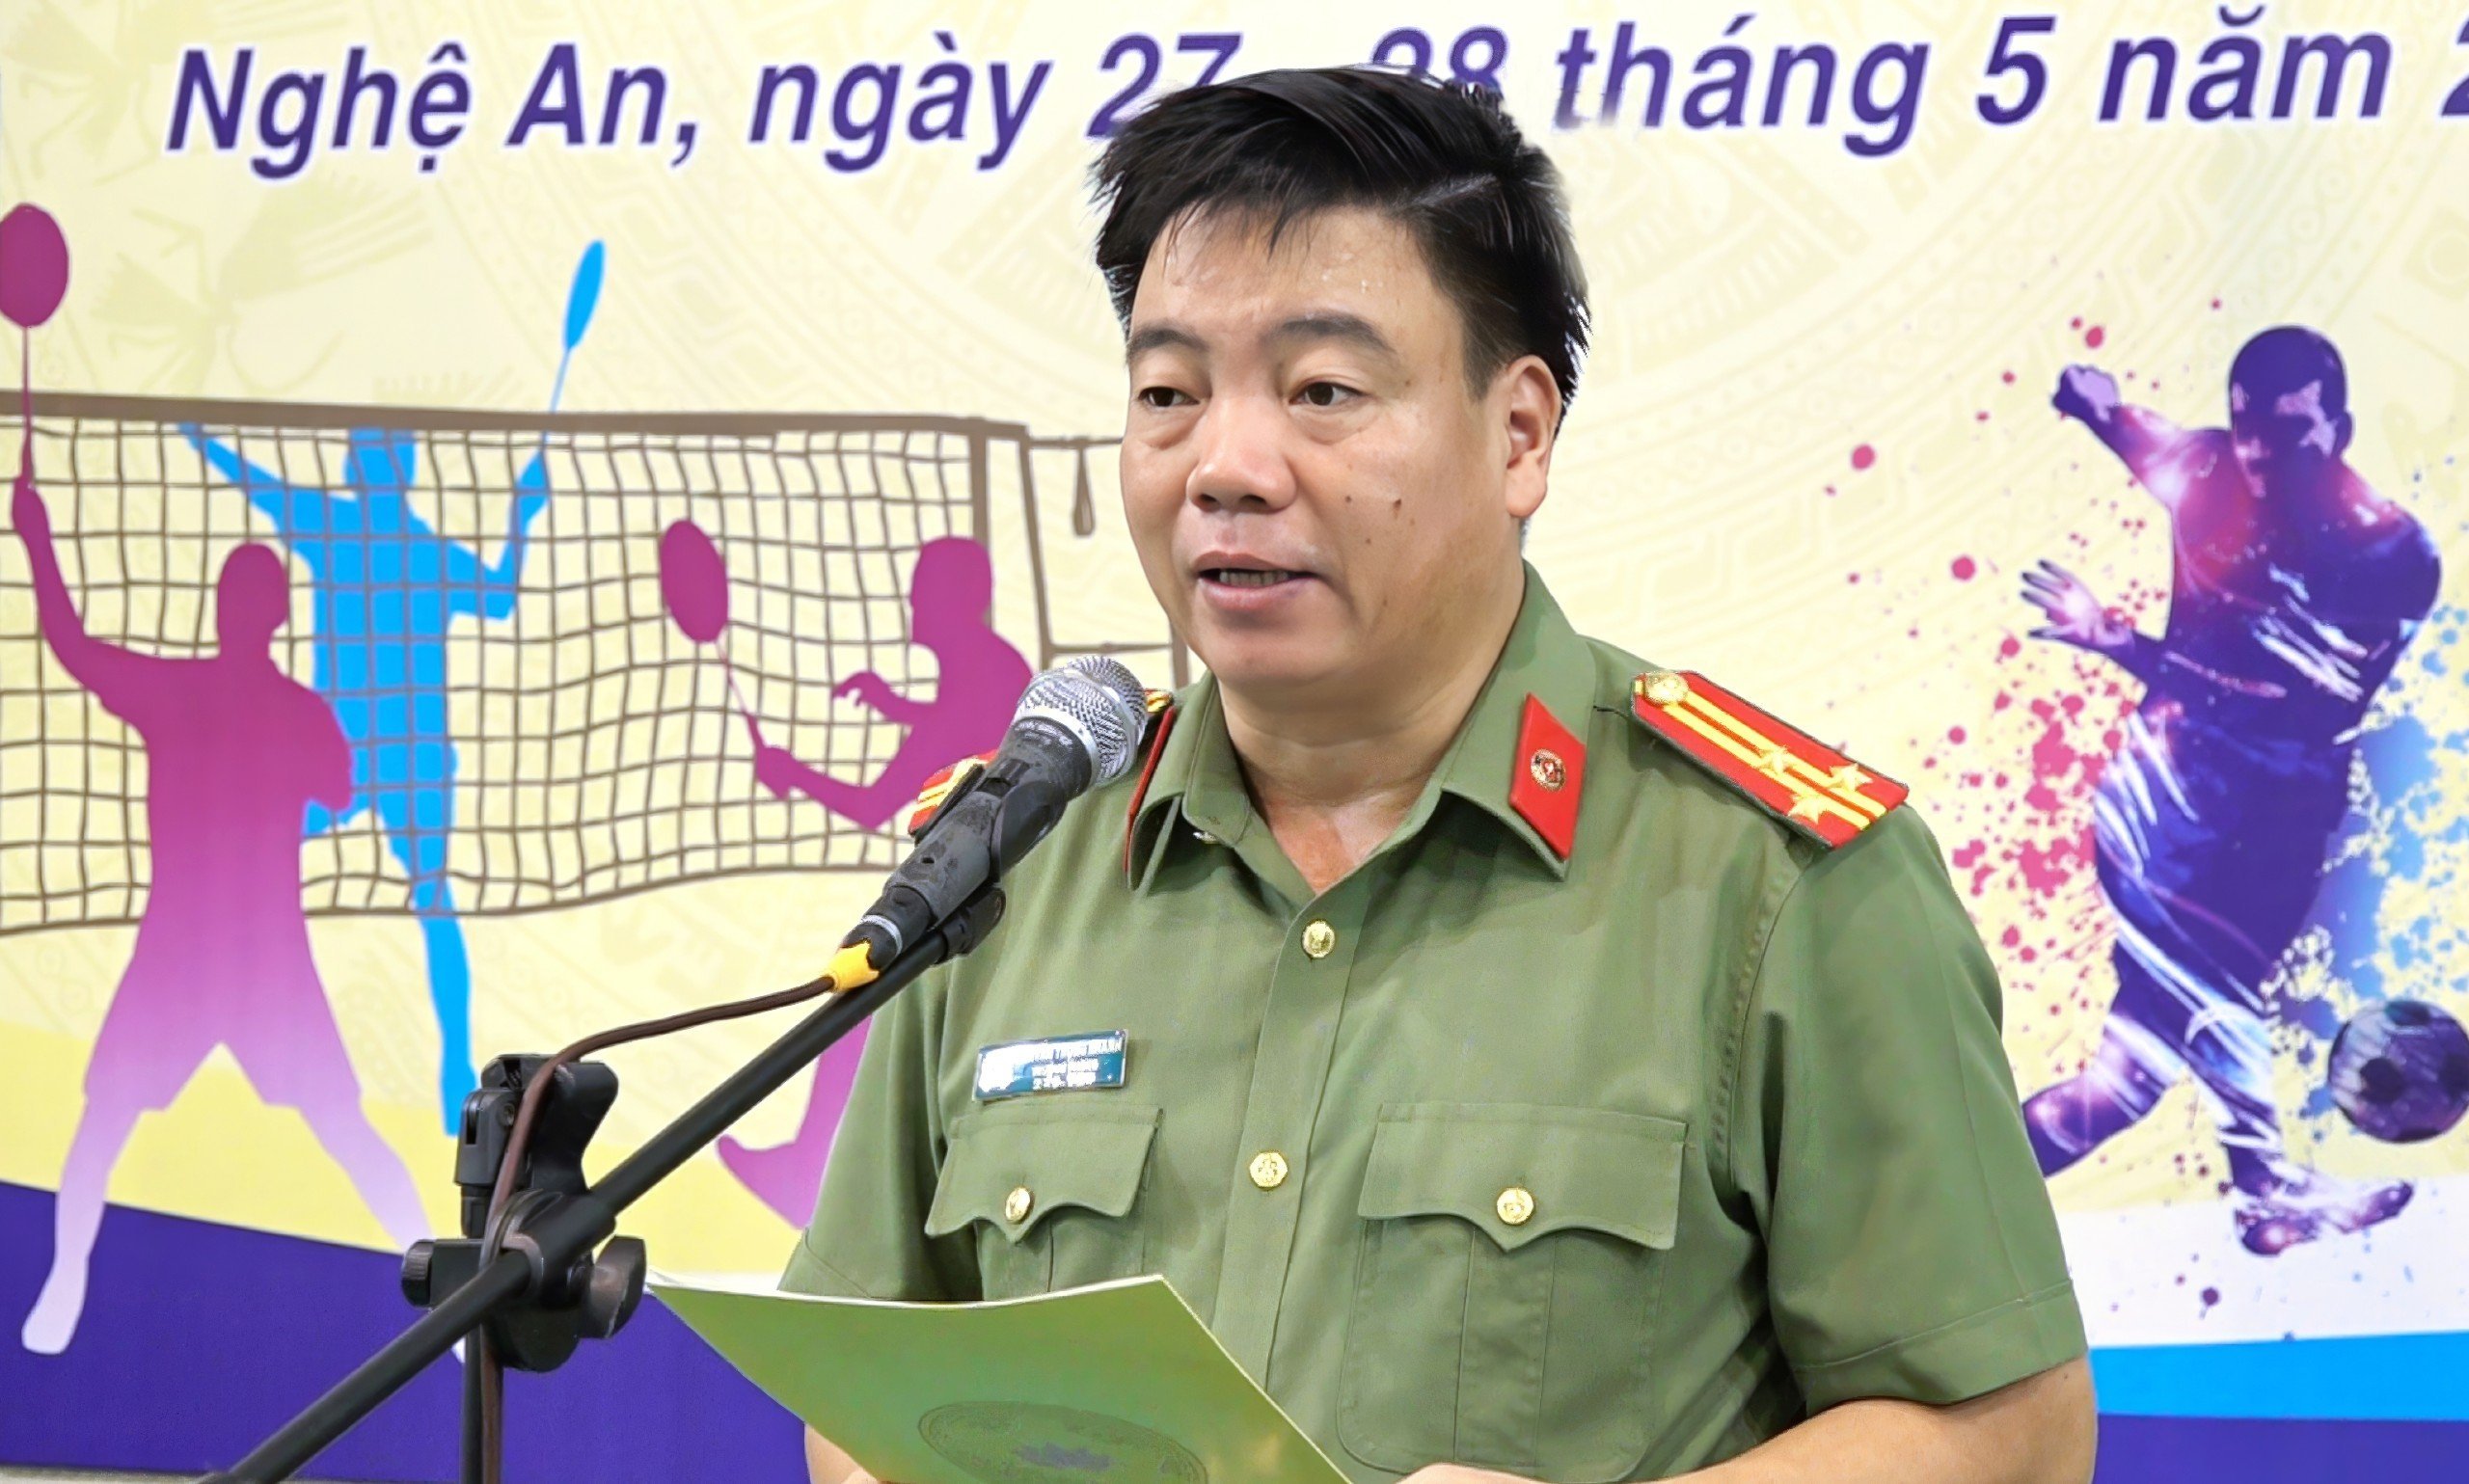 Thượng tá Nguyễn Trọng Khanh, Trưởng phòng Công tác Đảng và công tác chính trị phát biểu khai mạc giải cầu lông